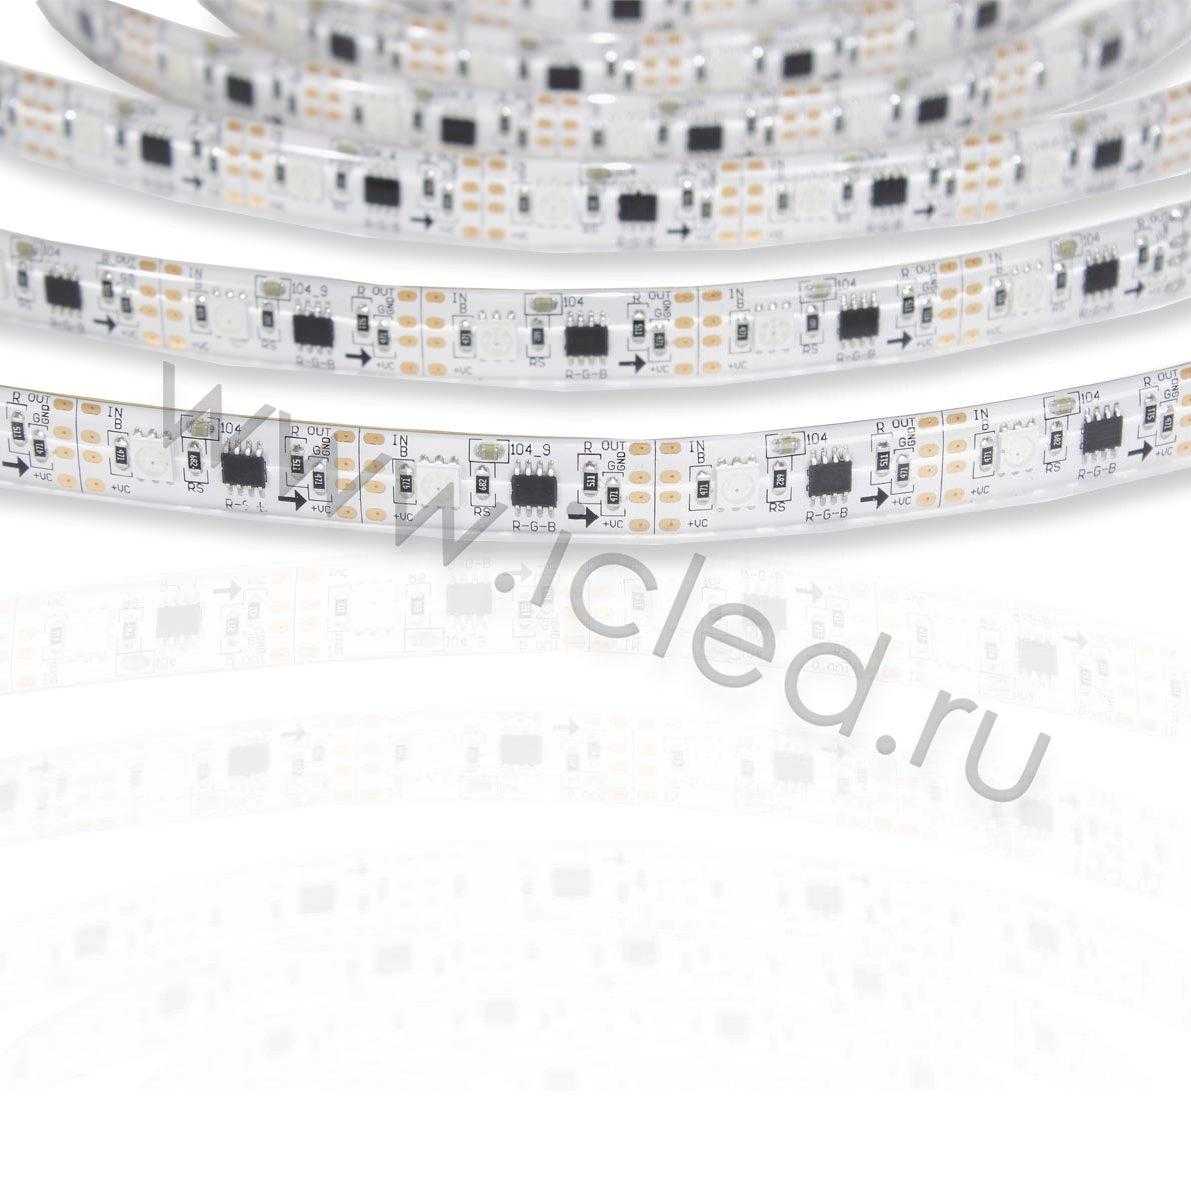 Управляемые светодиодные ленты Светодиодная лента 5050, 30 led/m, V600, RGB-SPI (IC1804), 12V, IP65 Icled